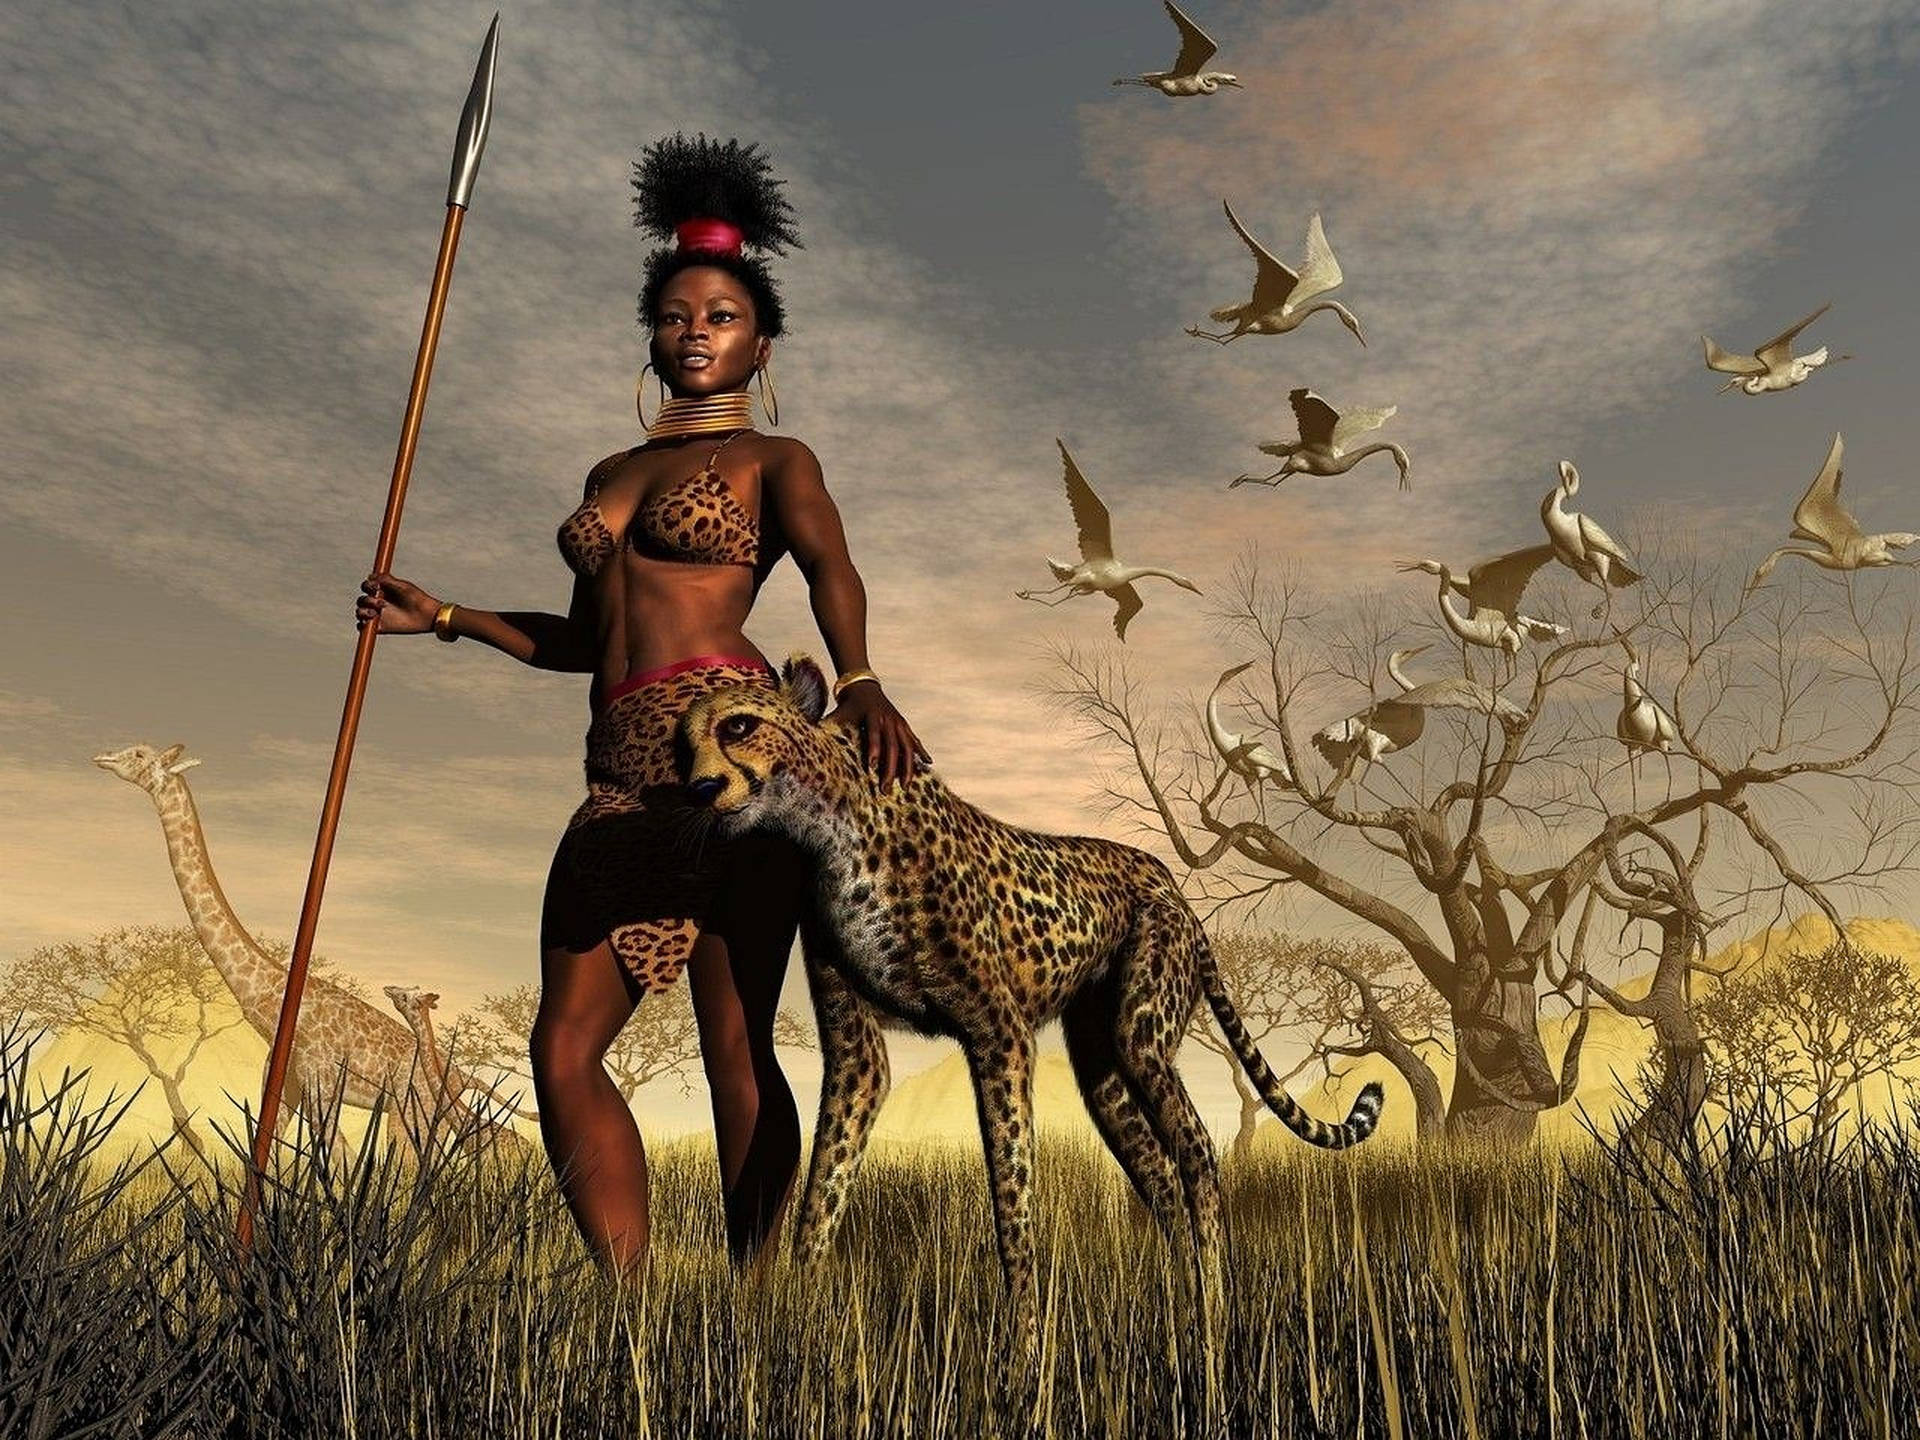 Female African Warrior Art Background